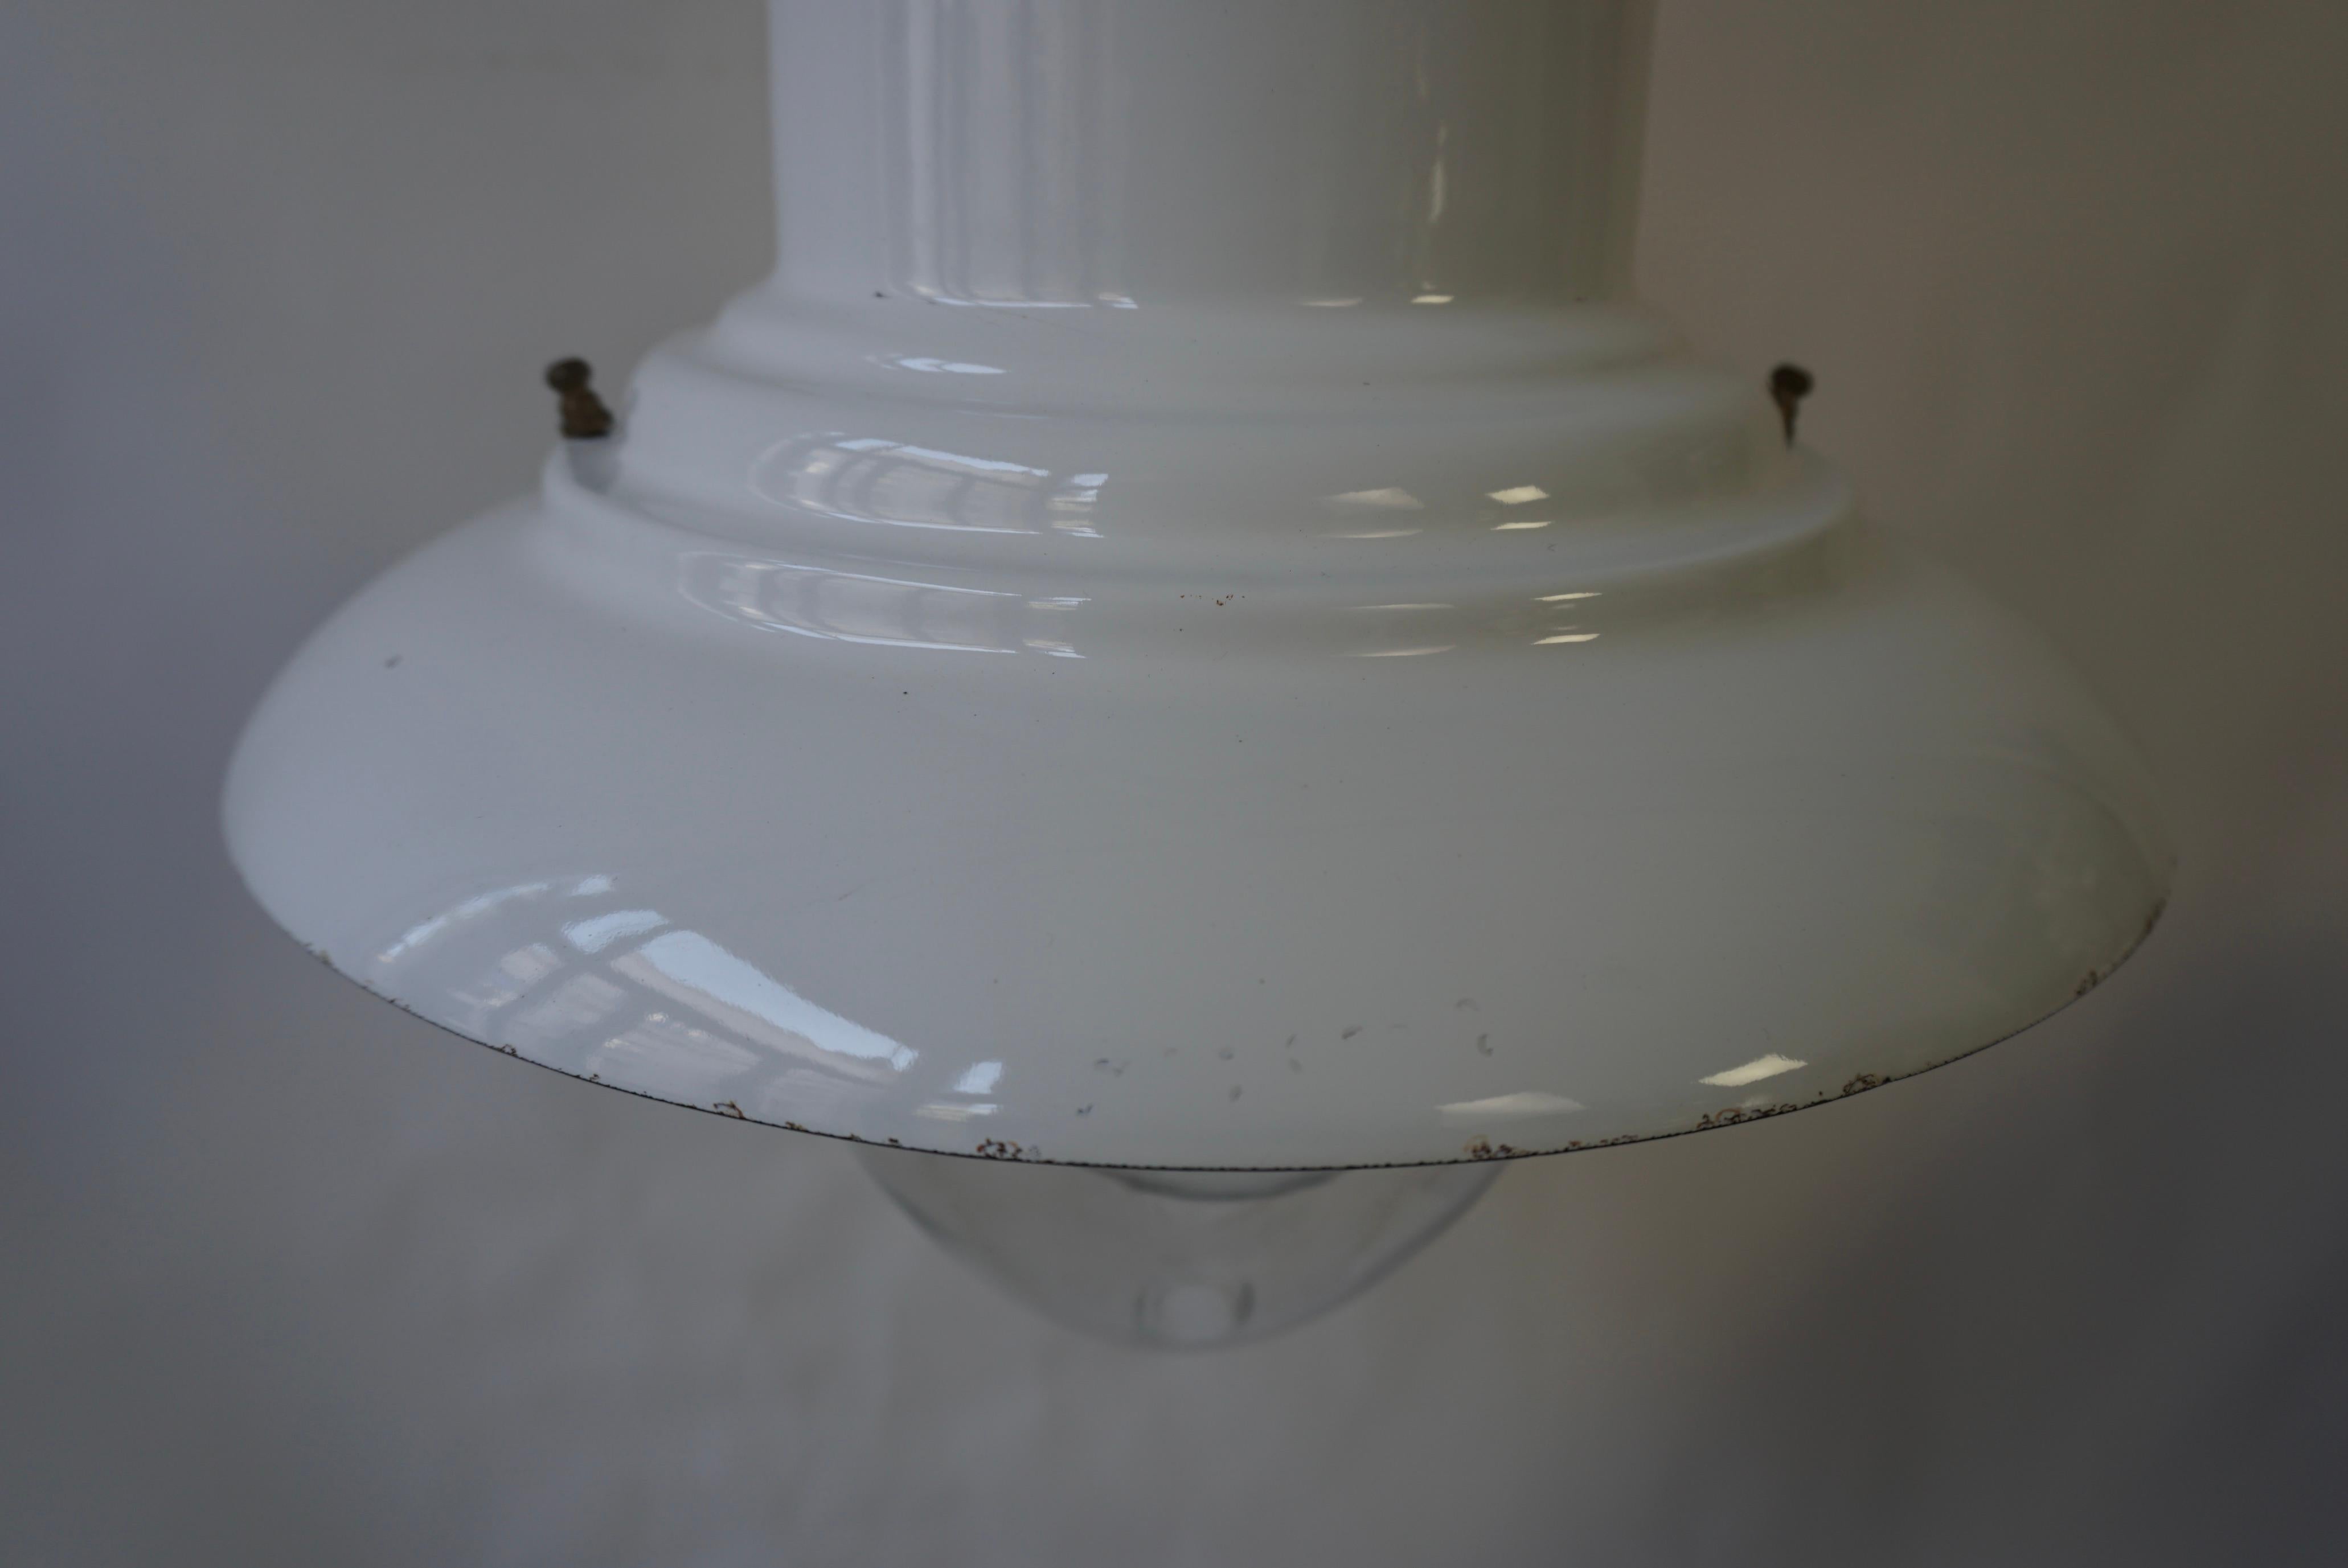 Industrial White Enamel Pendant Lamp, 1960s For Sale 8